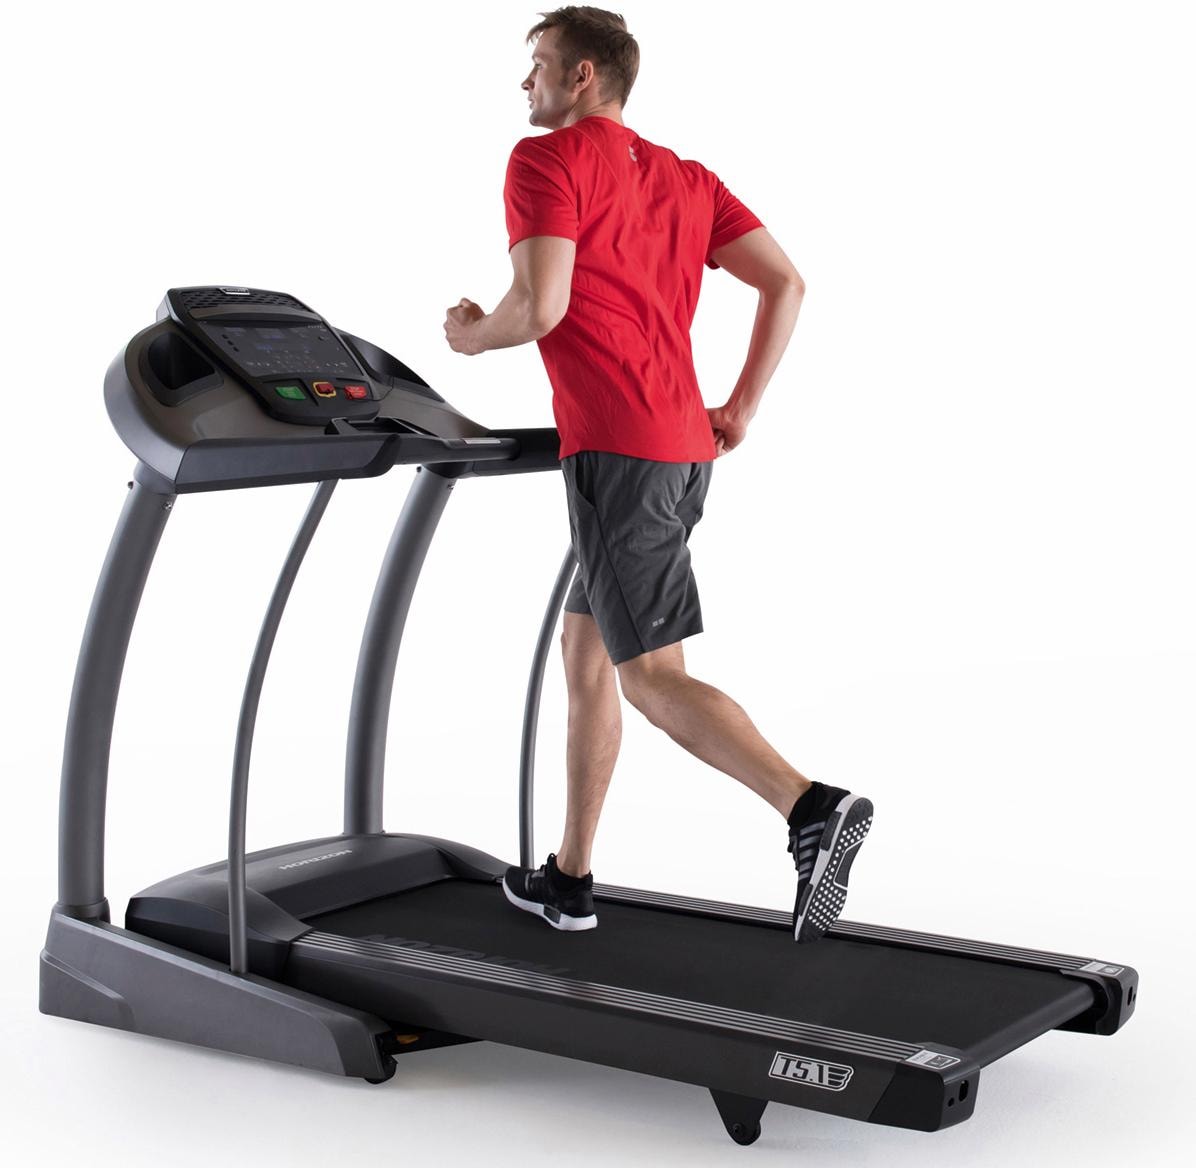 Horizon Fitness Laufband »Elite T5.1«, mit Höchstgeschwindigkeit 20 km/h und Lauffläche von 153 x 50 cm